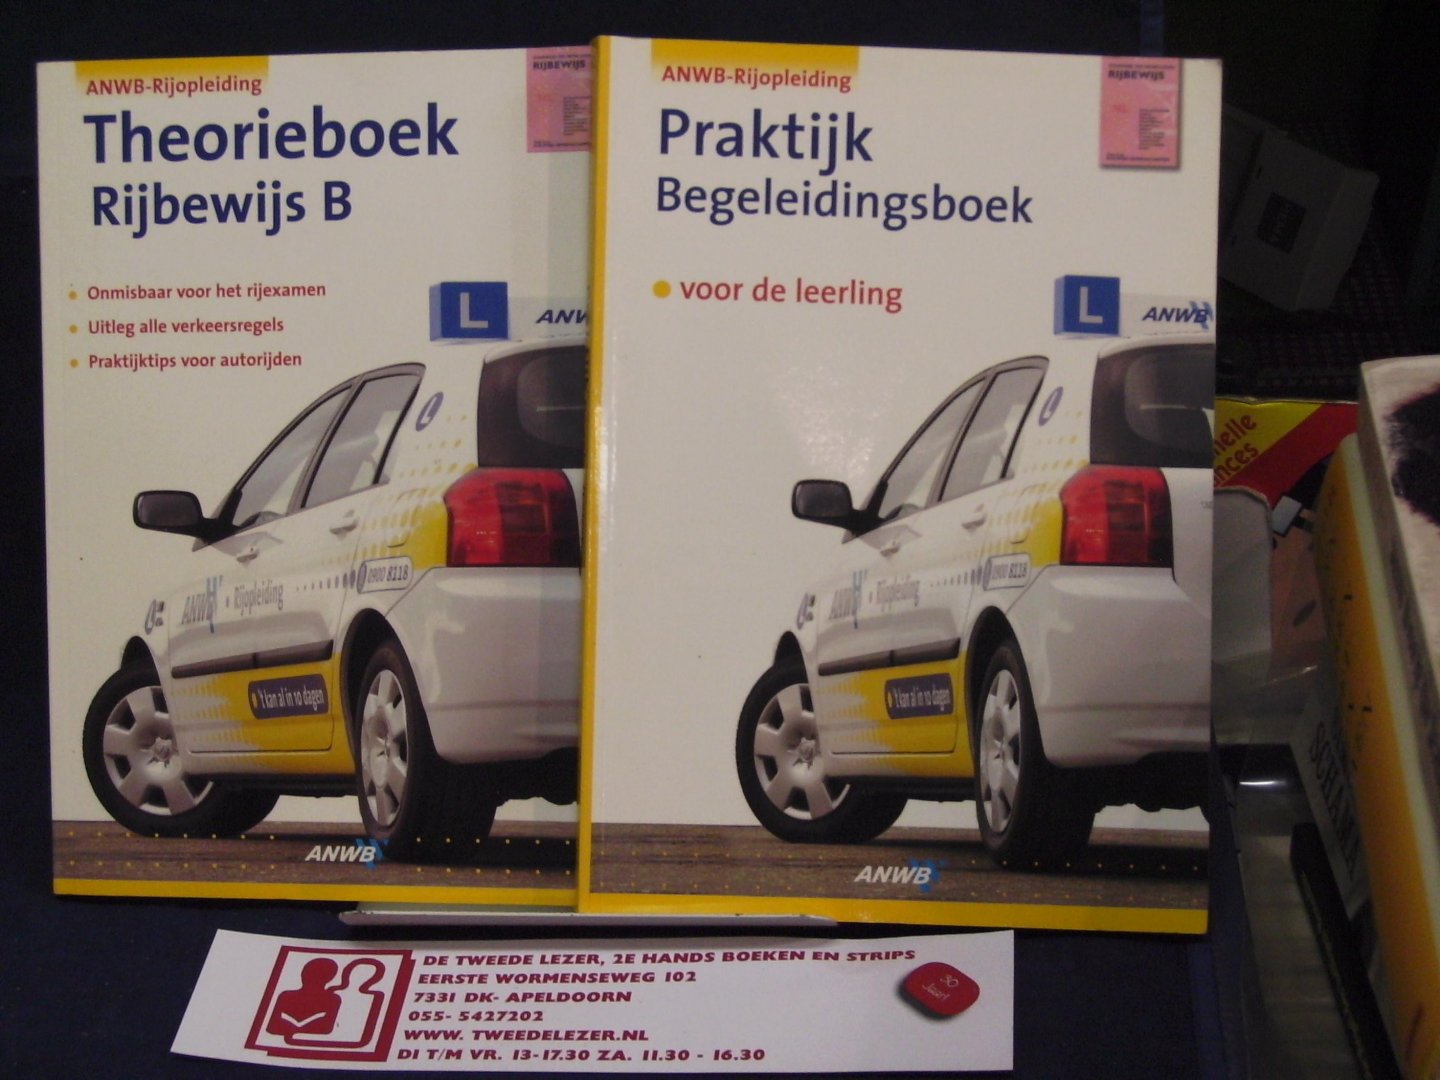 Beersum, Wilbert van - ANWB Rijopleiding Rijbewijs B Theorieboek & Praktijk begeleidingsboek voor de leerling